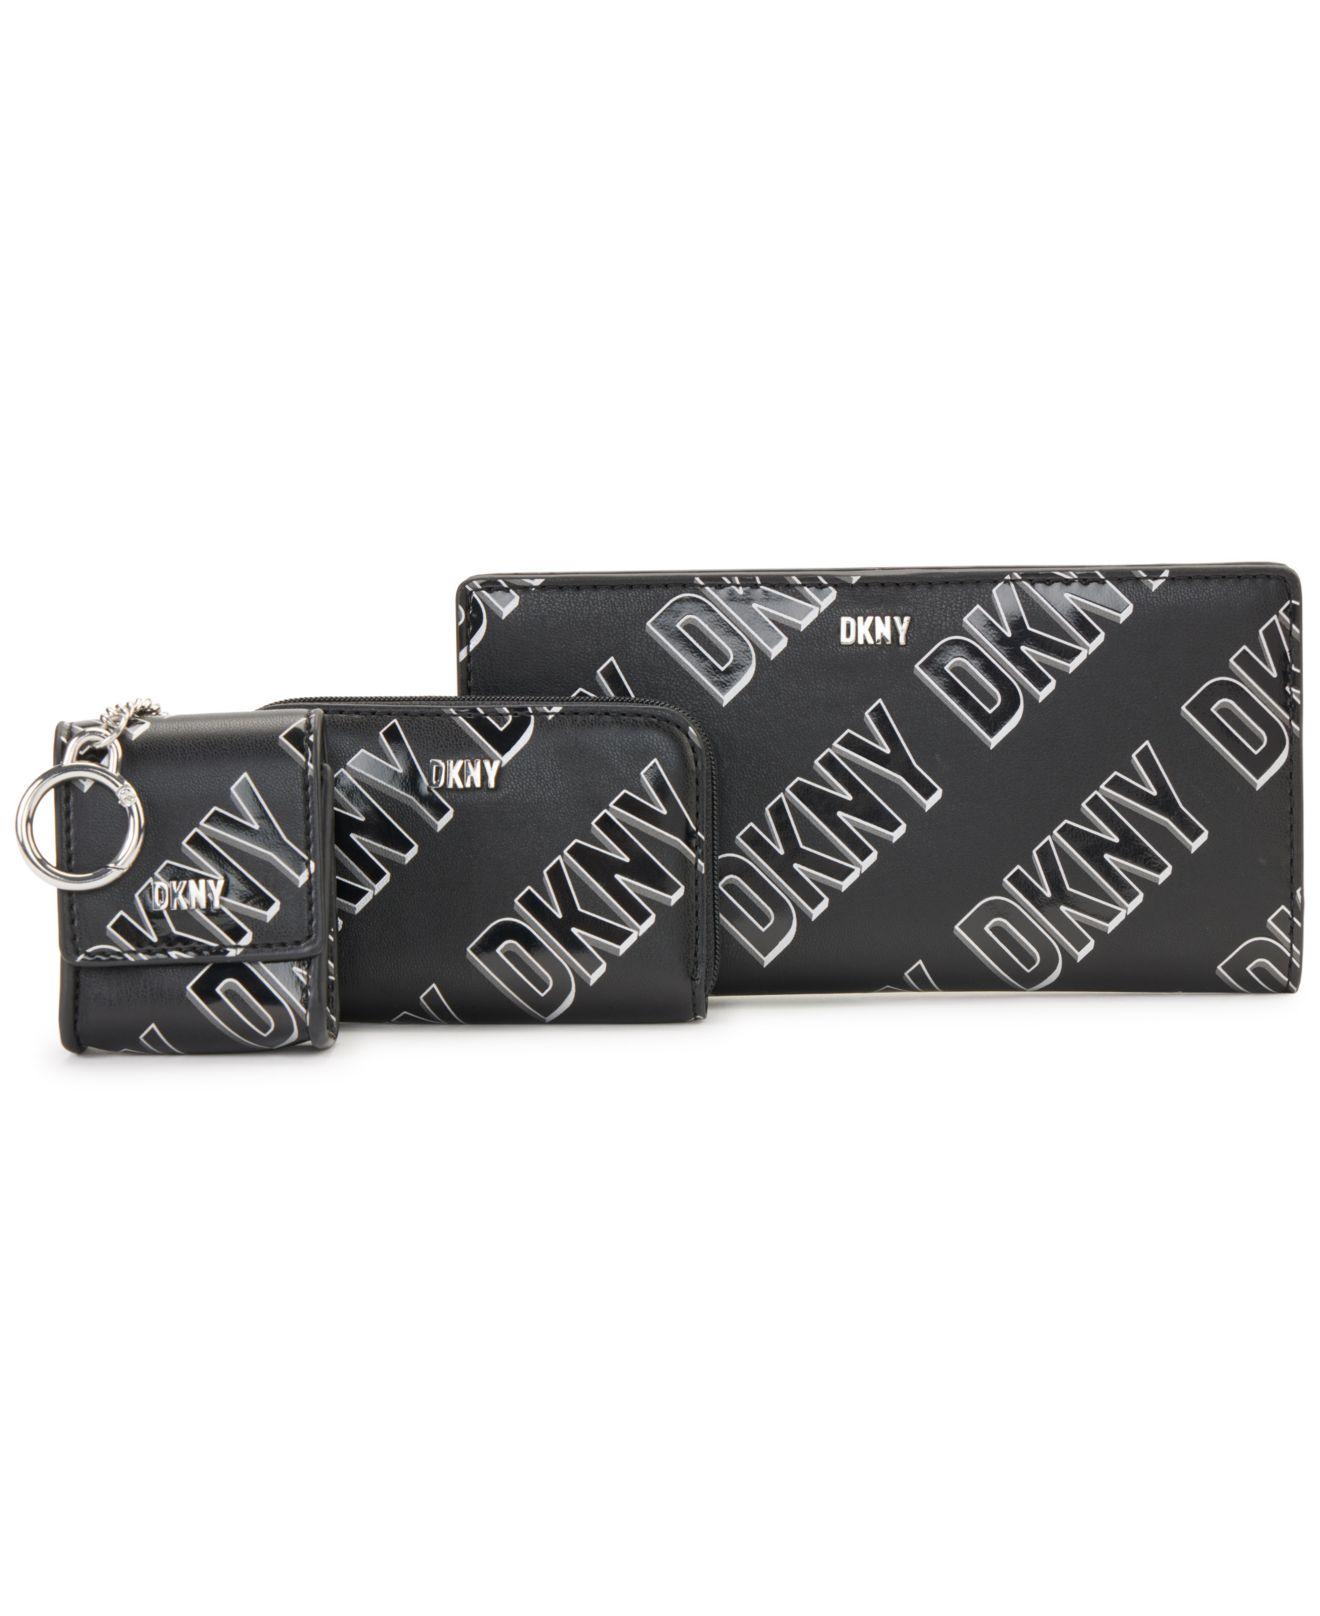 DKNY Phoenix 3 In 1 Wallet Gift Box Set in Black | Lyst